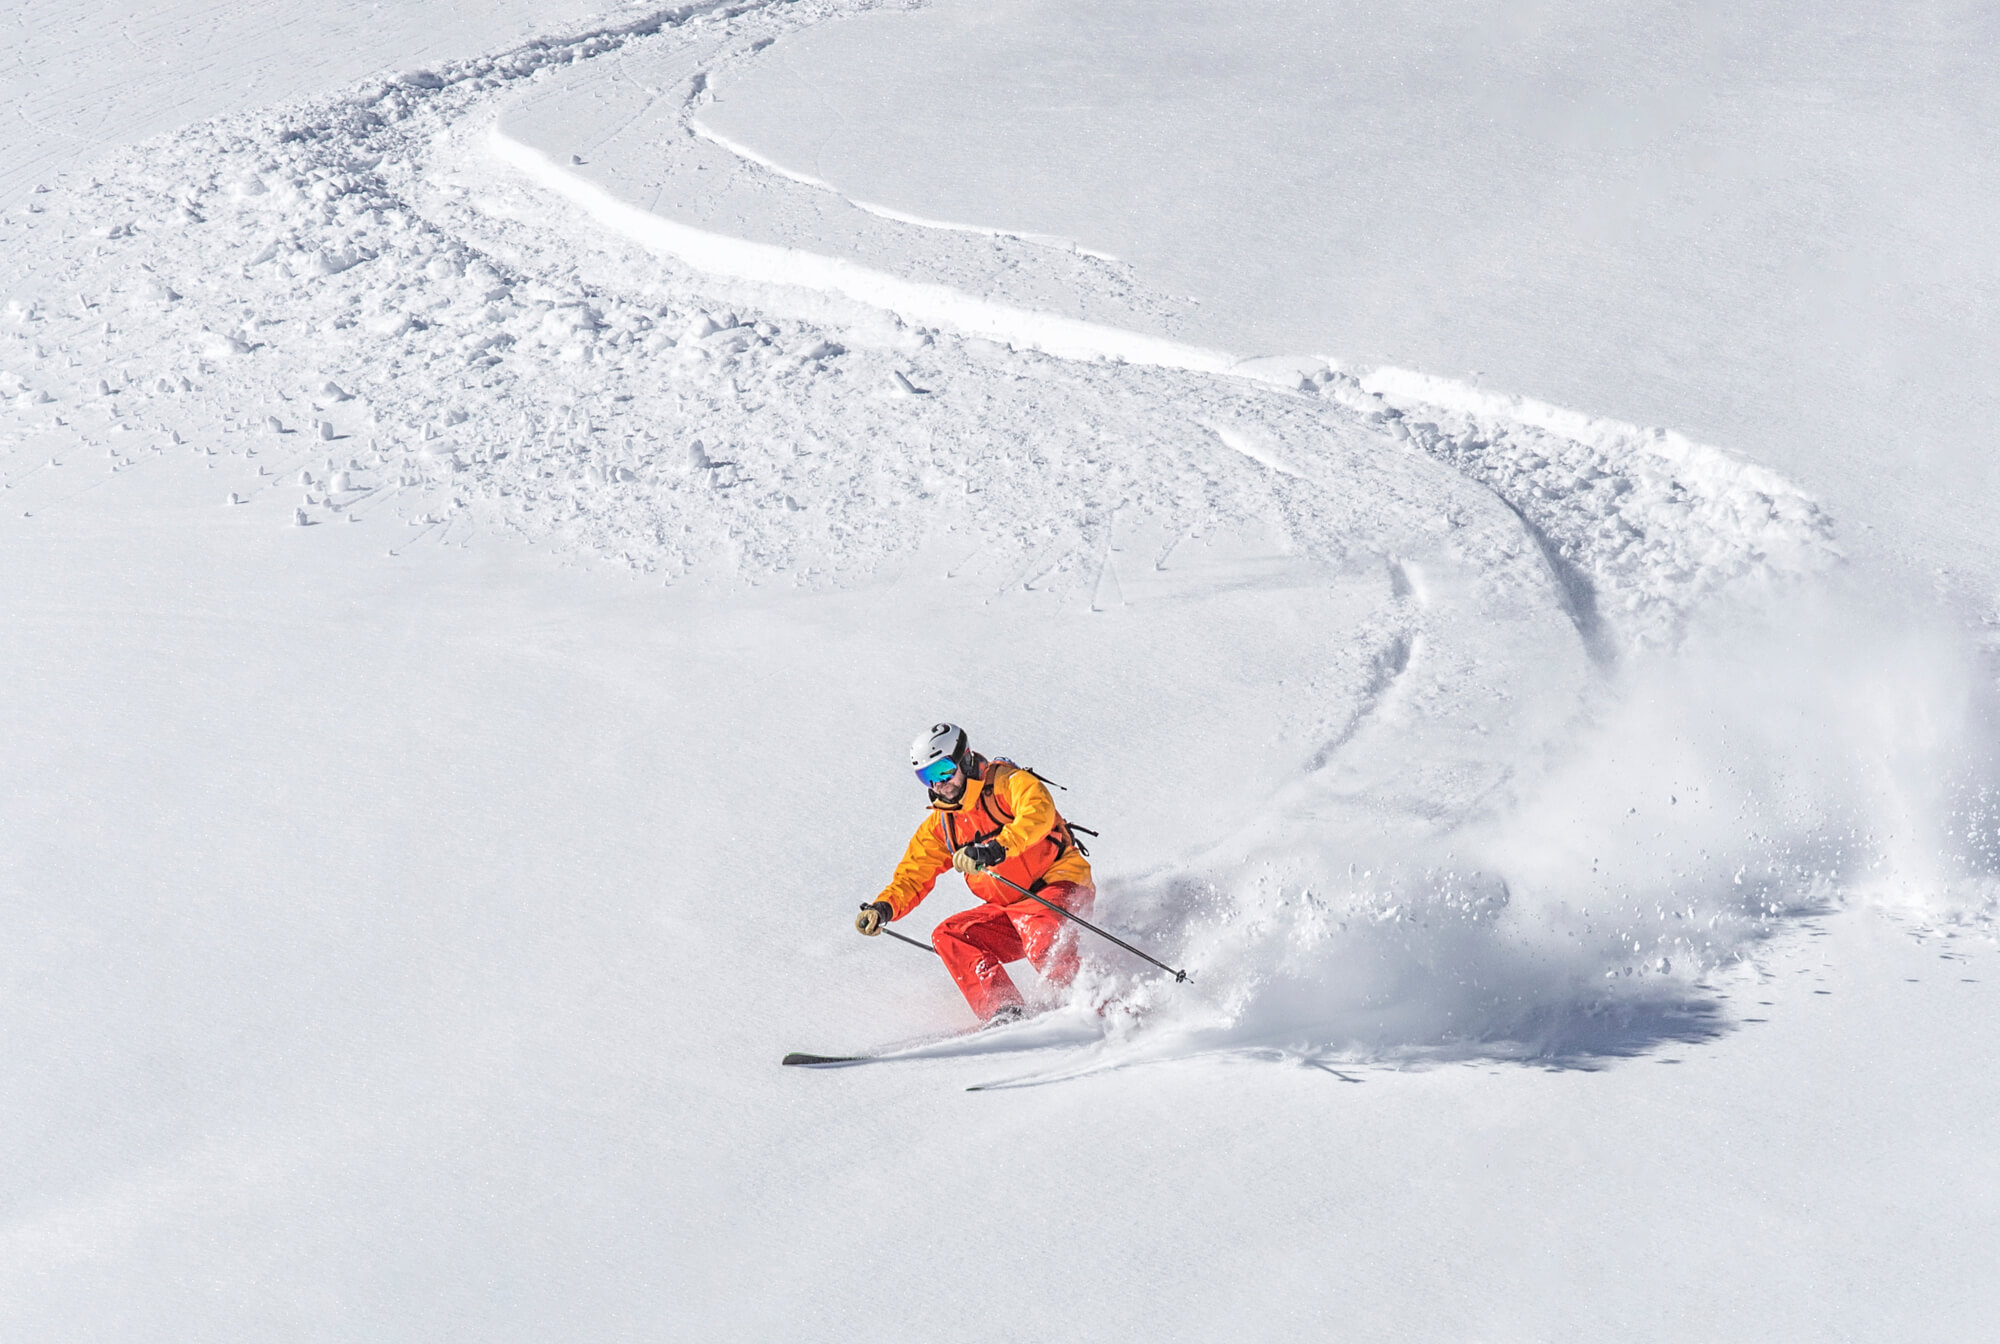 Skier freerides in deep snow